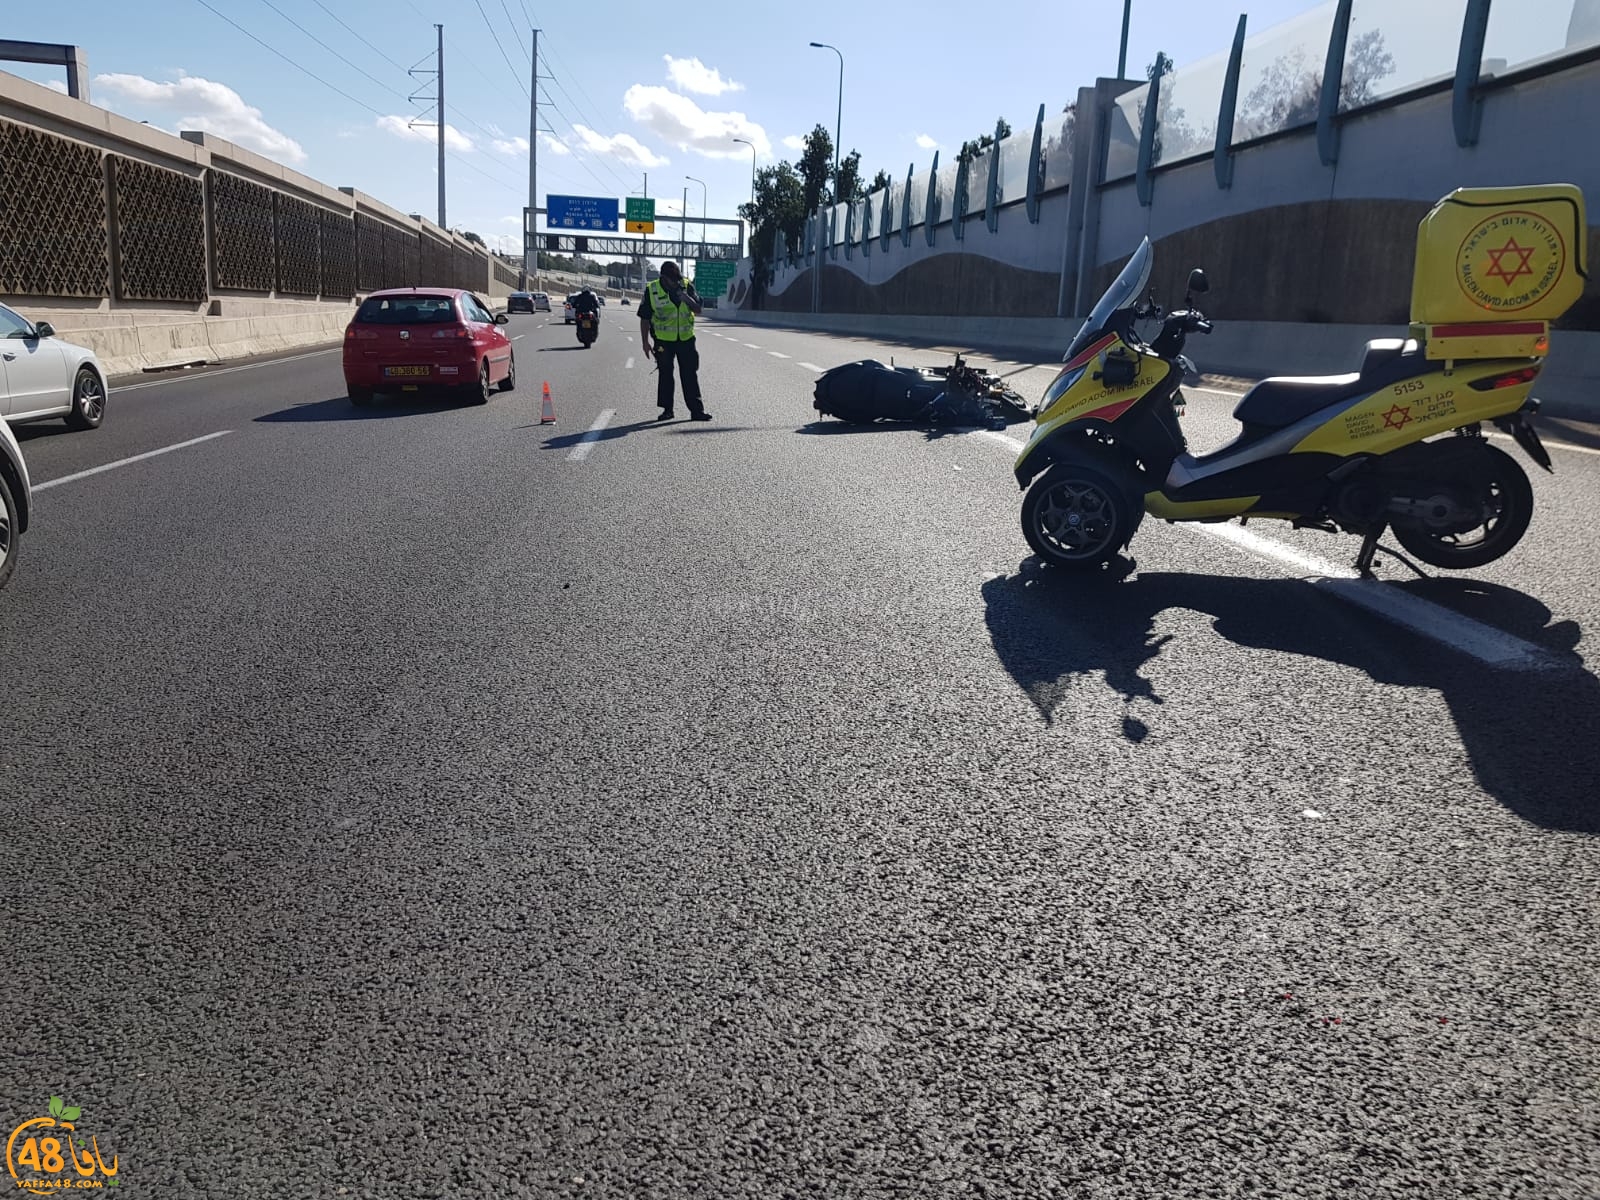   بالصور: إصابة متوسطة لراكب دراجة نارية بحادث طرق جنوب يافا